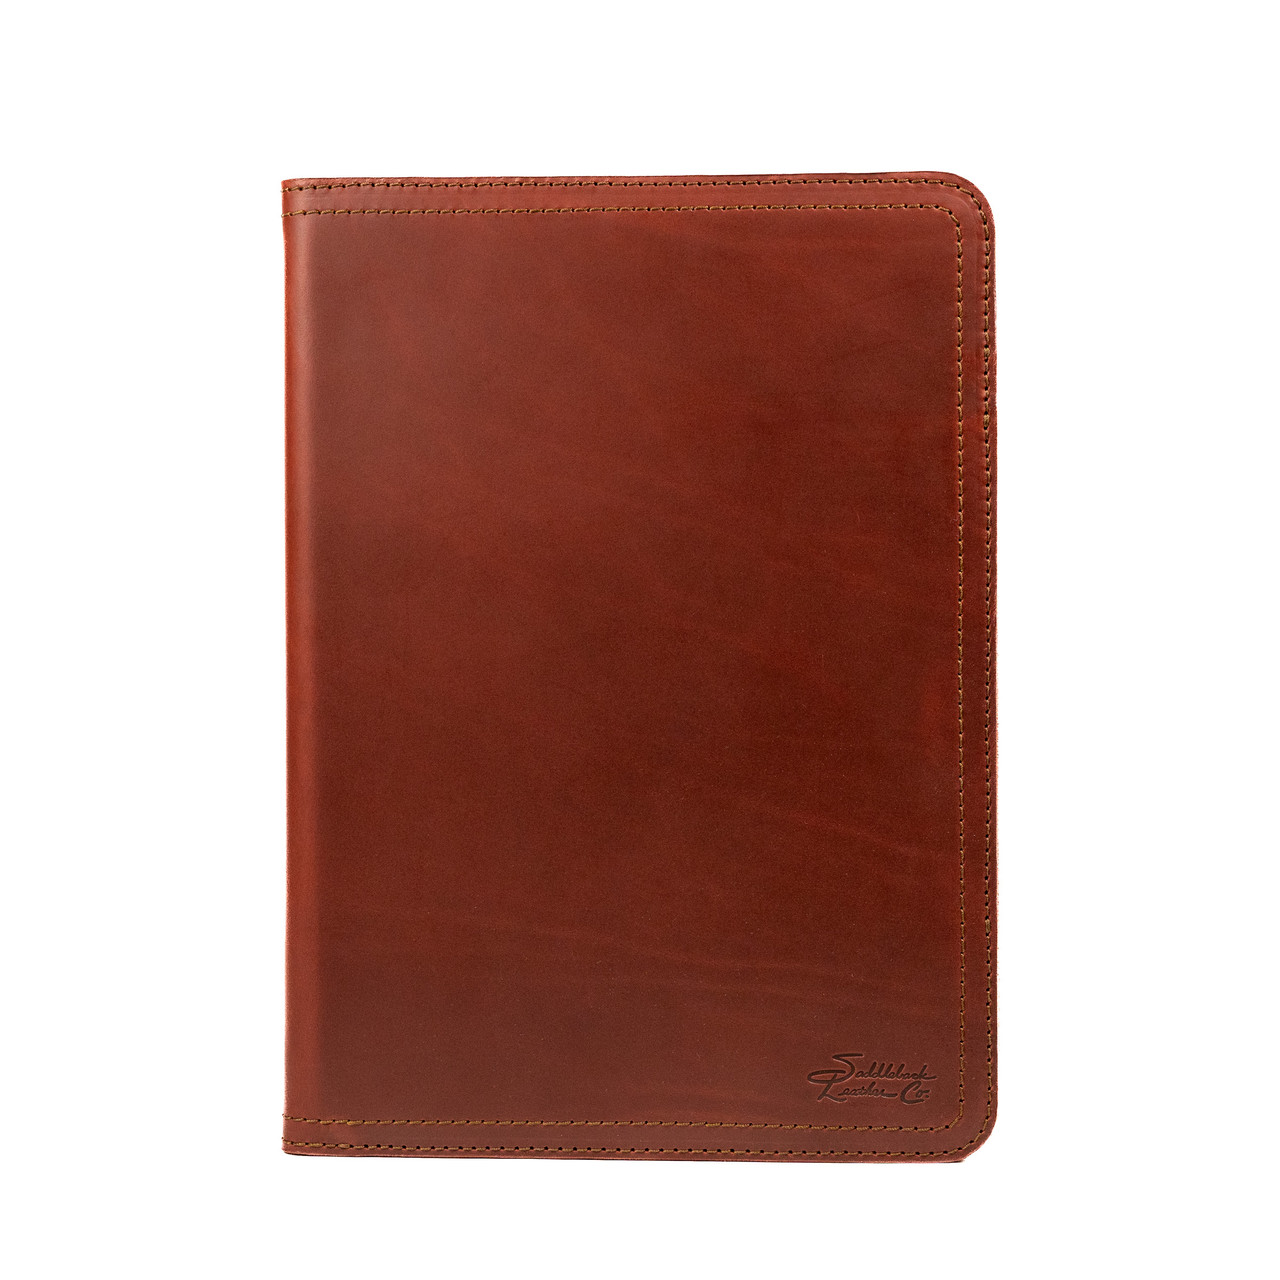 duke&cow RNAB0B1ZD697Z leather padfolio for men, leather portfolio